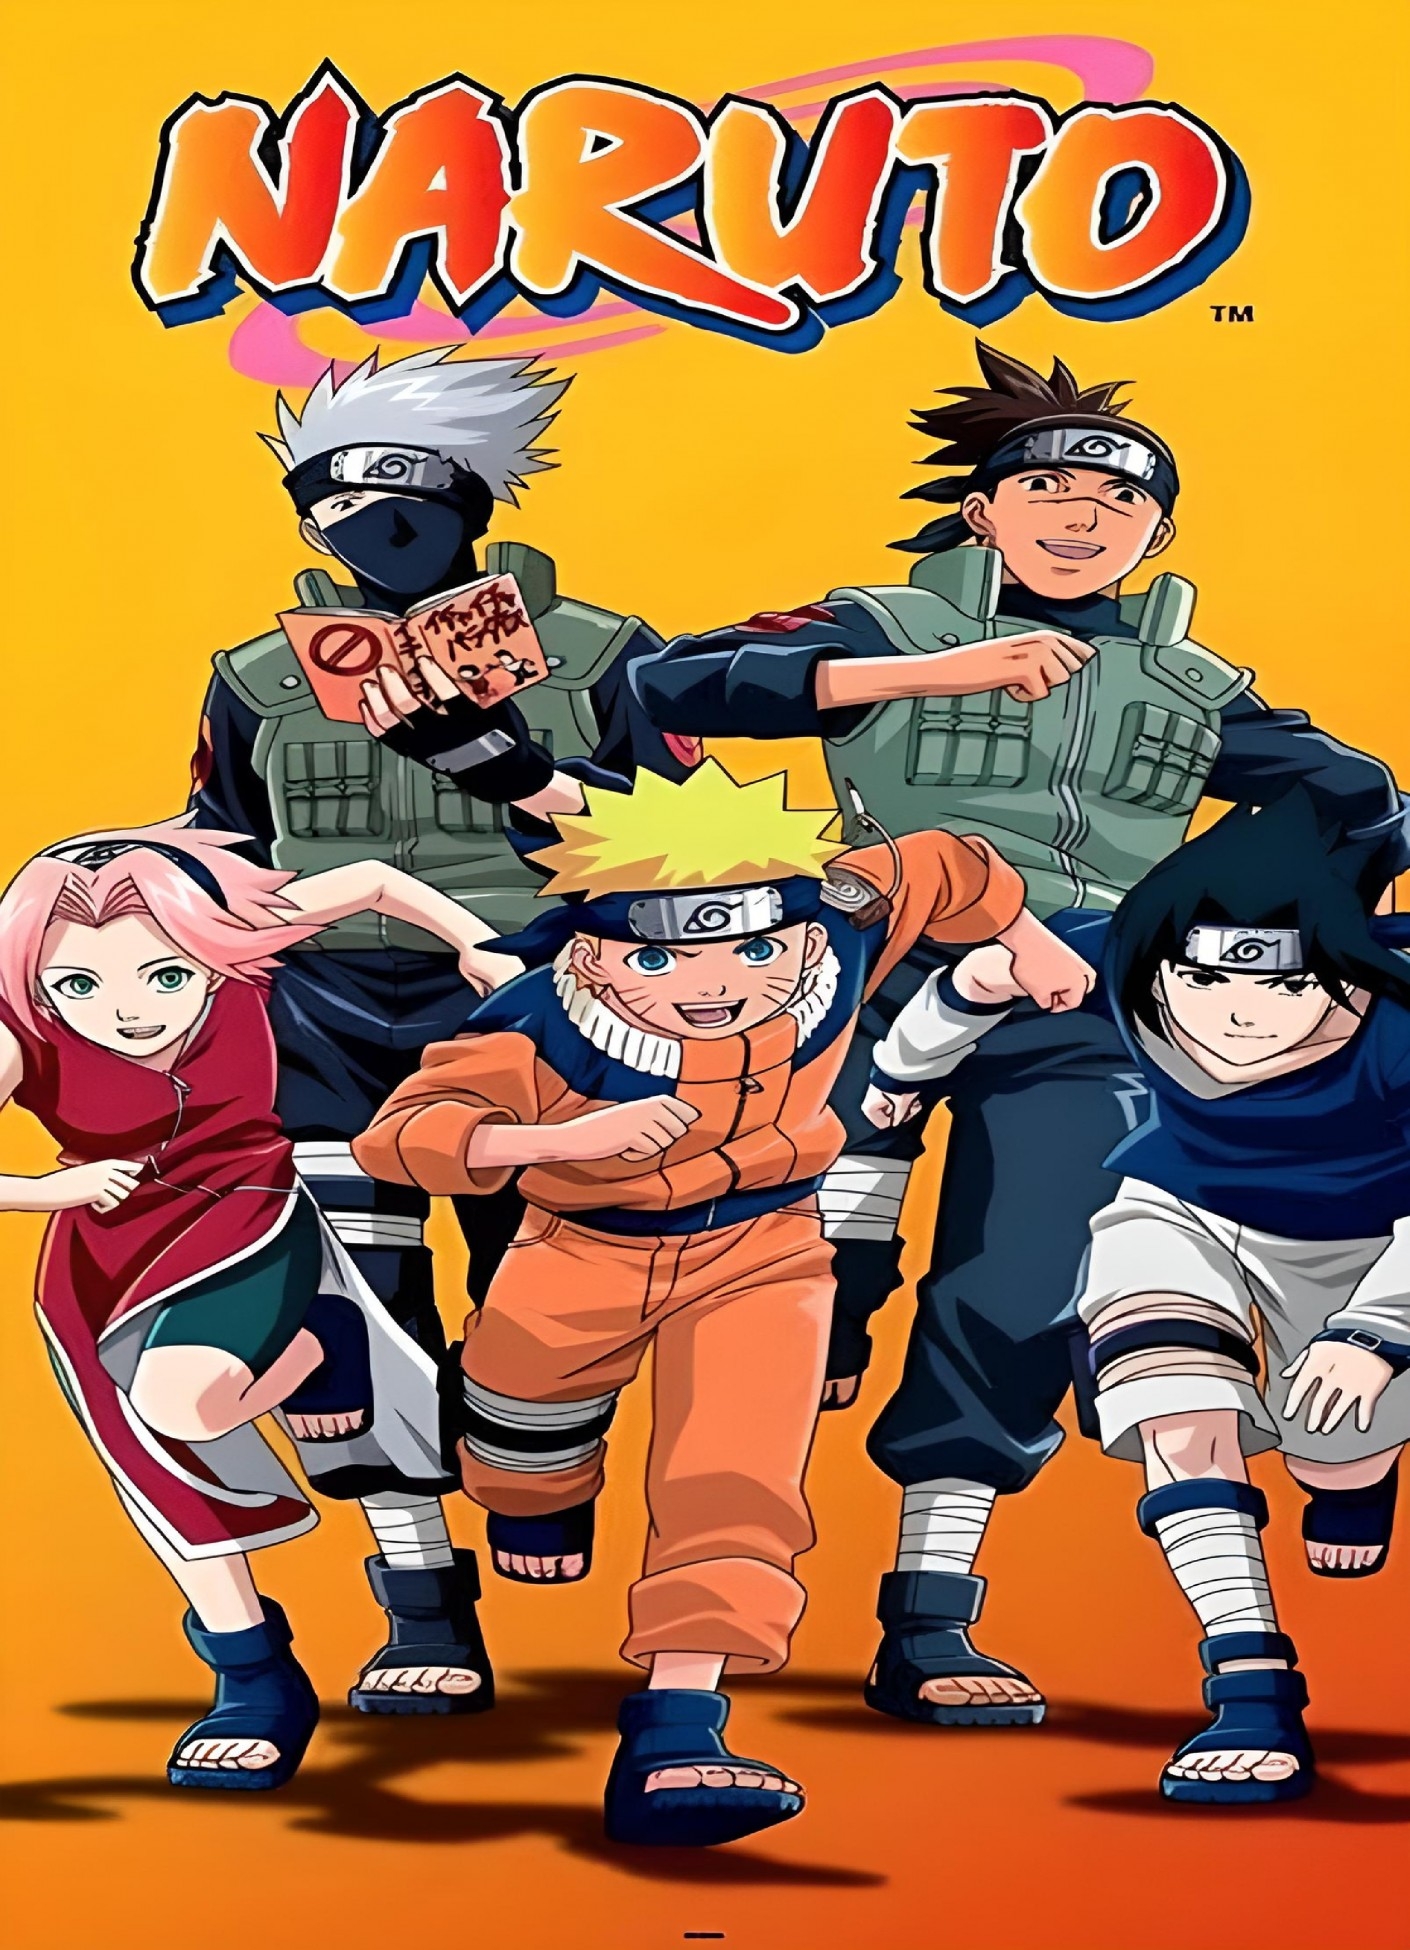 Naruto (Séries): Técnica Secreta Proibida Selo Ceifeiro da